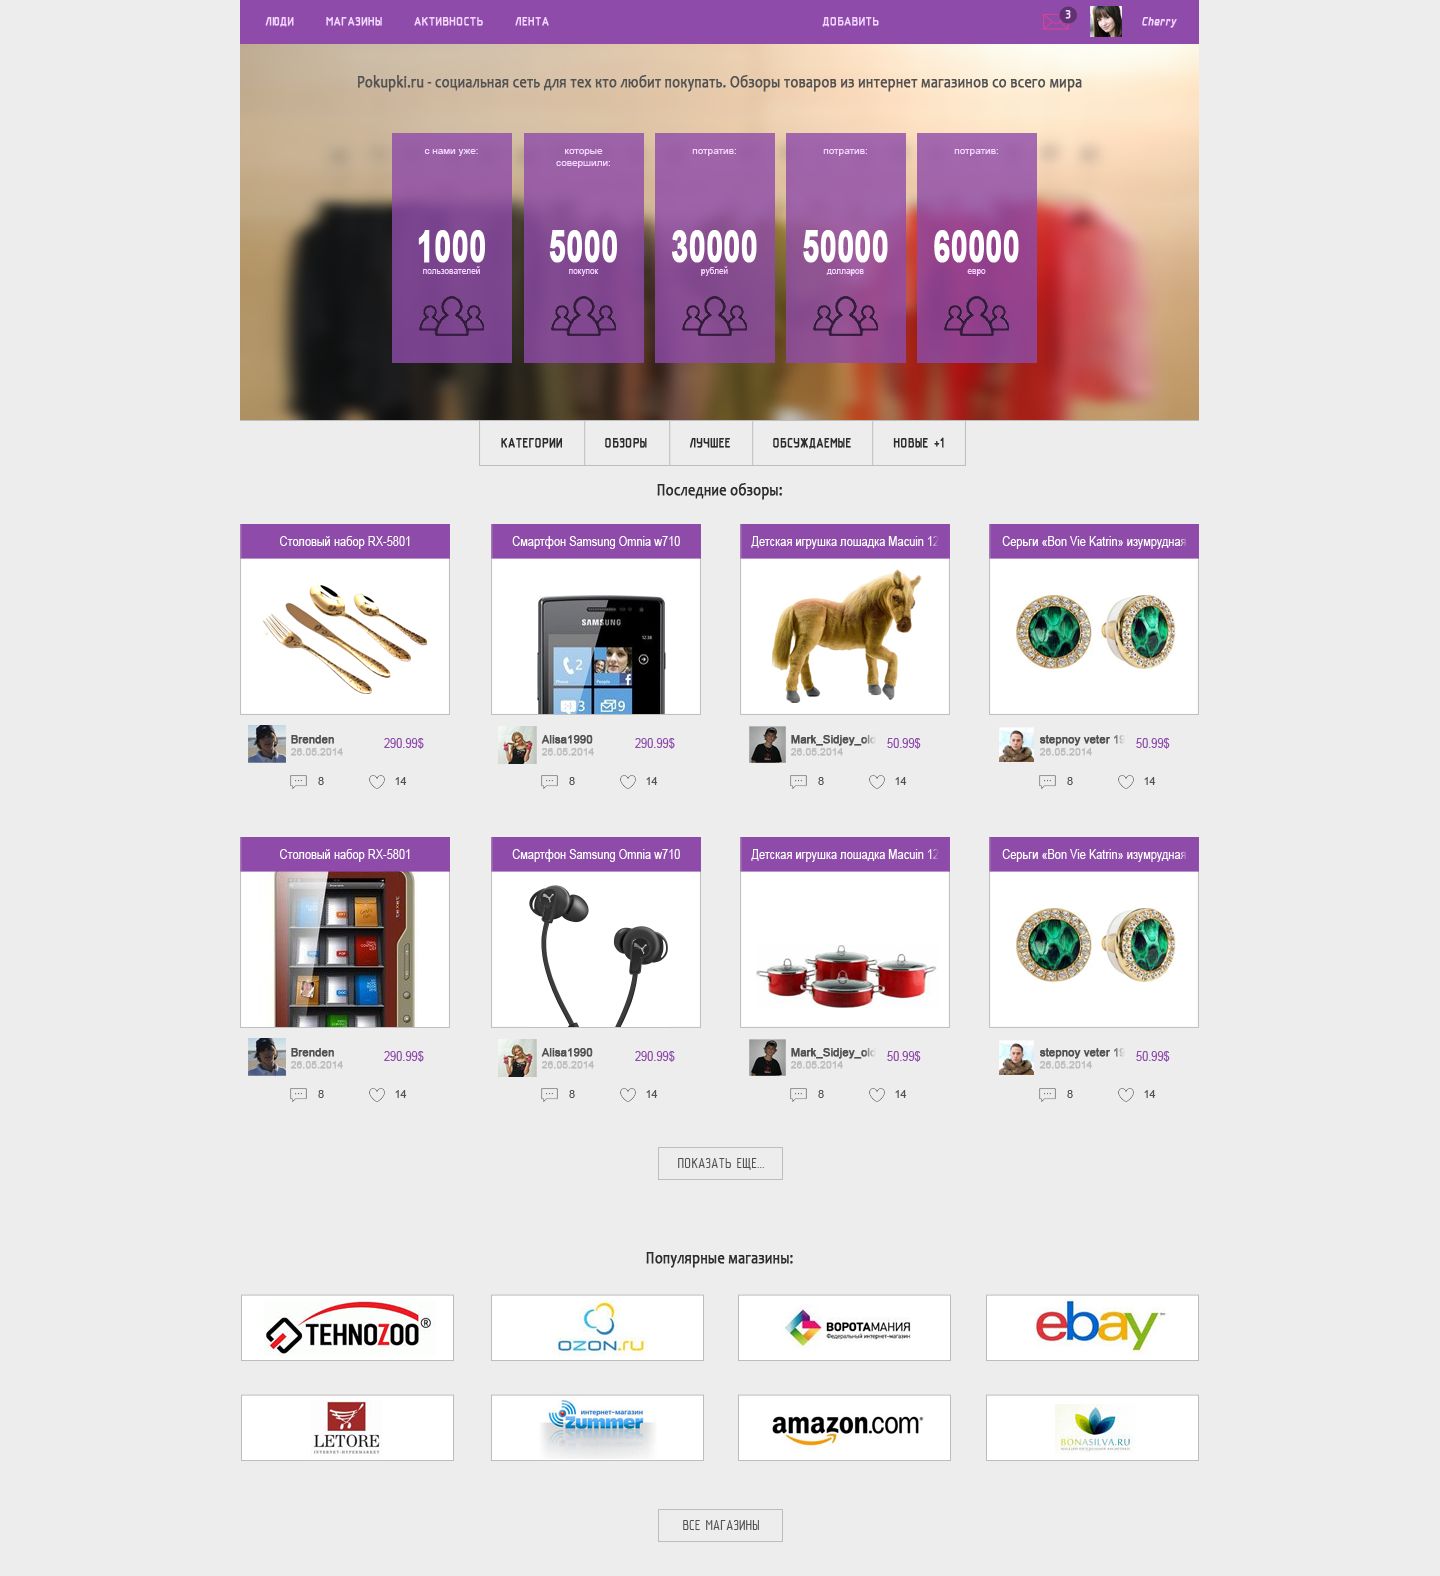 Дизайн блого-социального проекта по покупкам - дизайнер romehiko